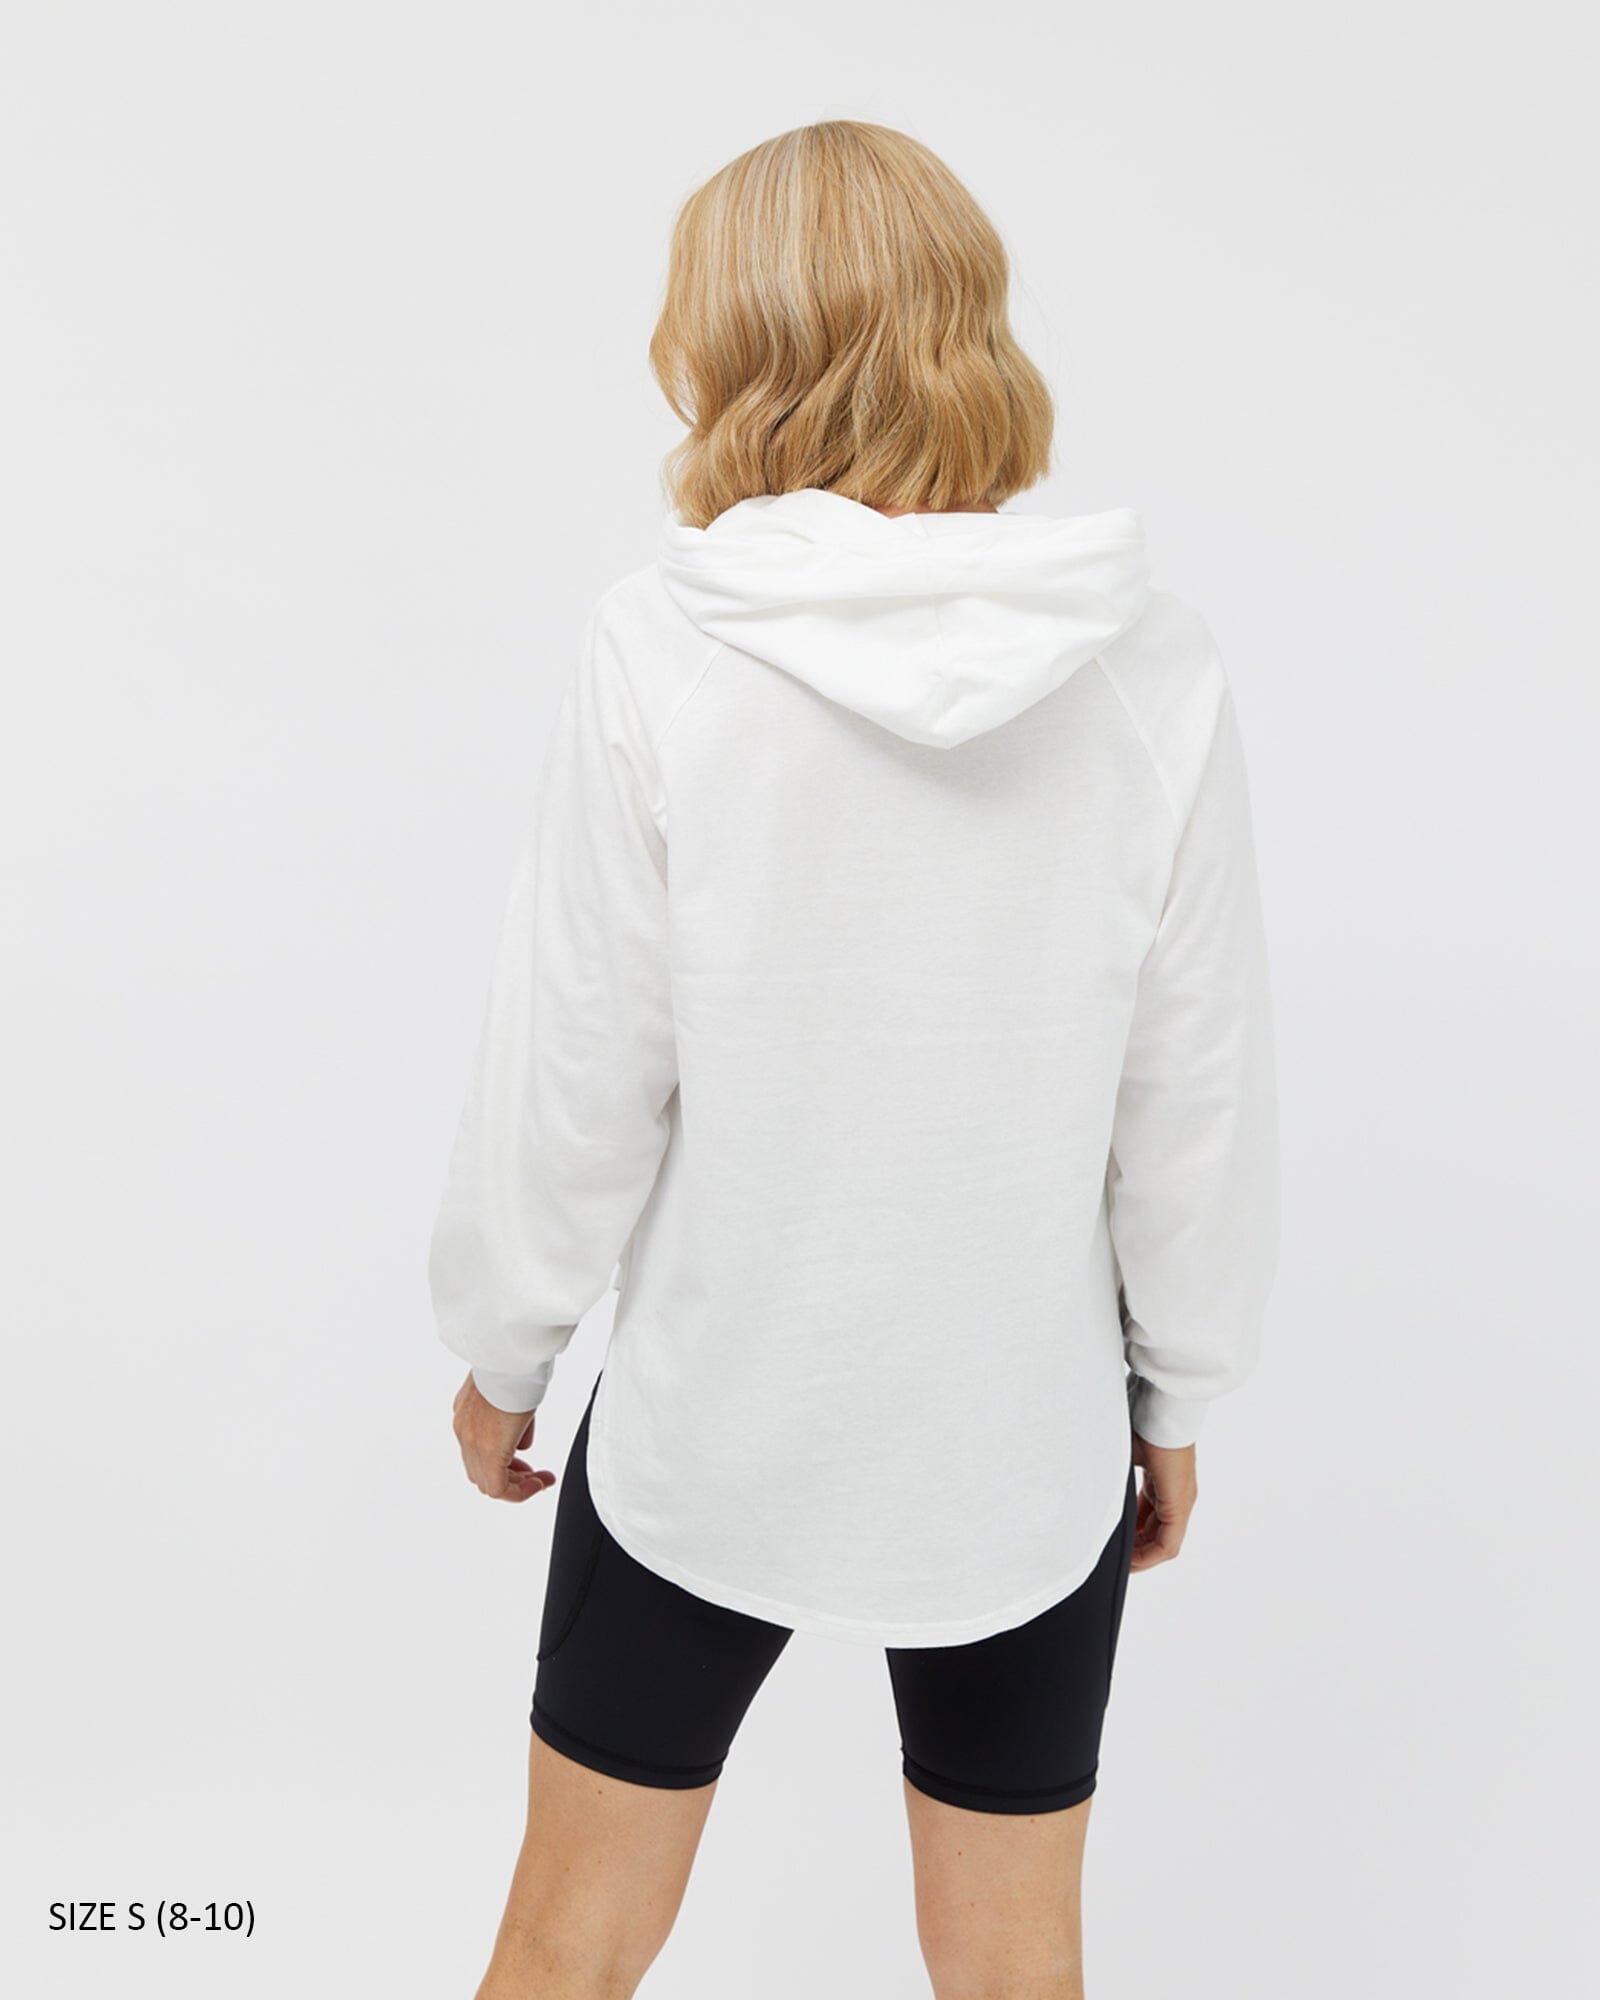 Chelle Long Sleeve Hoodie - White T-shirt Avila the label 